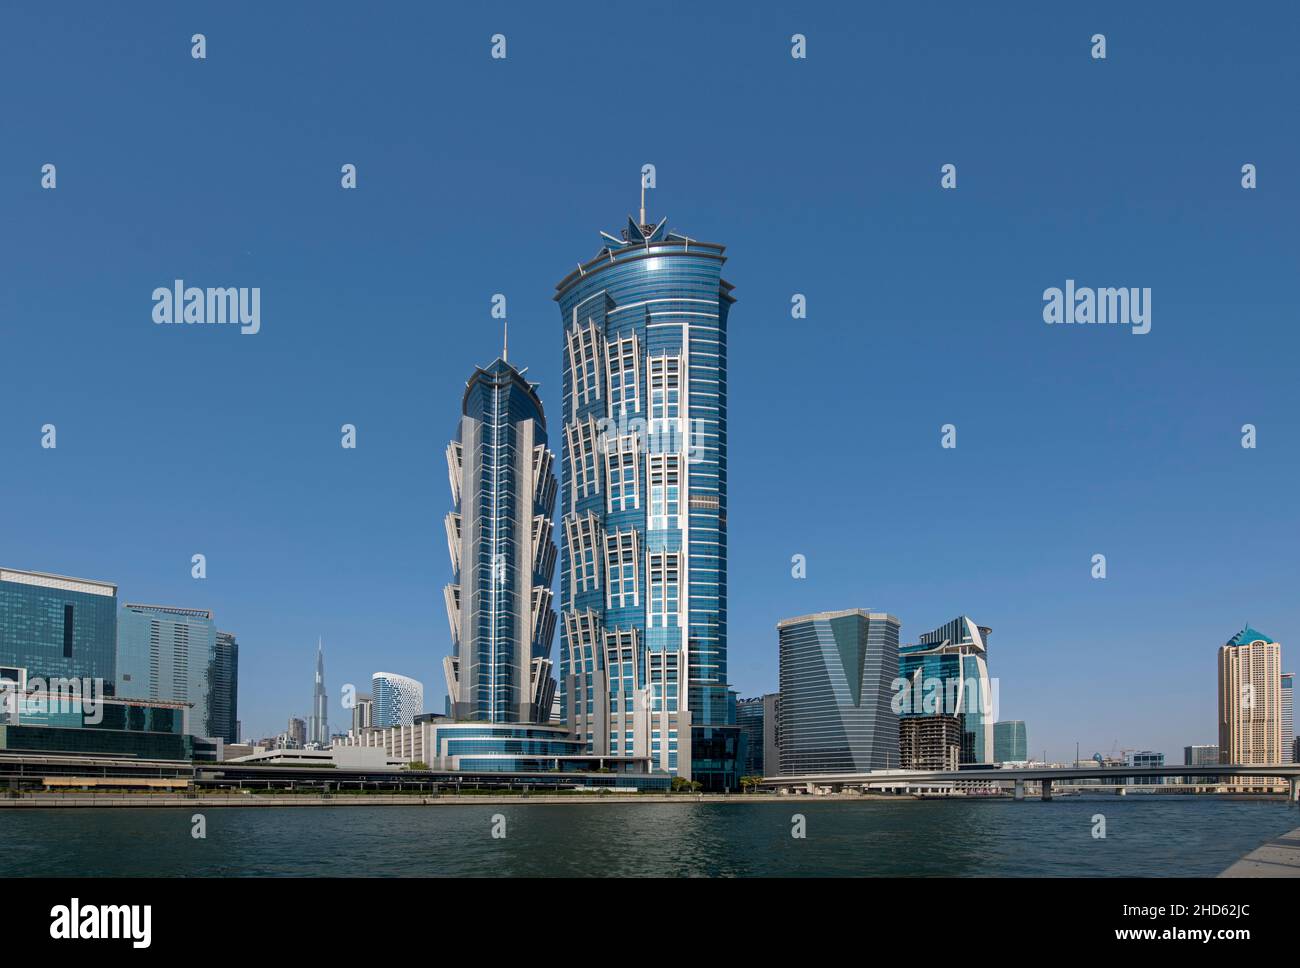 Edificios de oficinas de gran altura con vistas al distrito de negocios del canal de Dubai Foto de stock